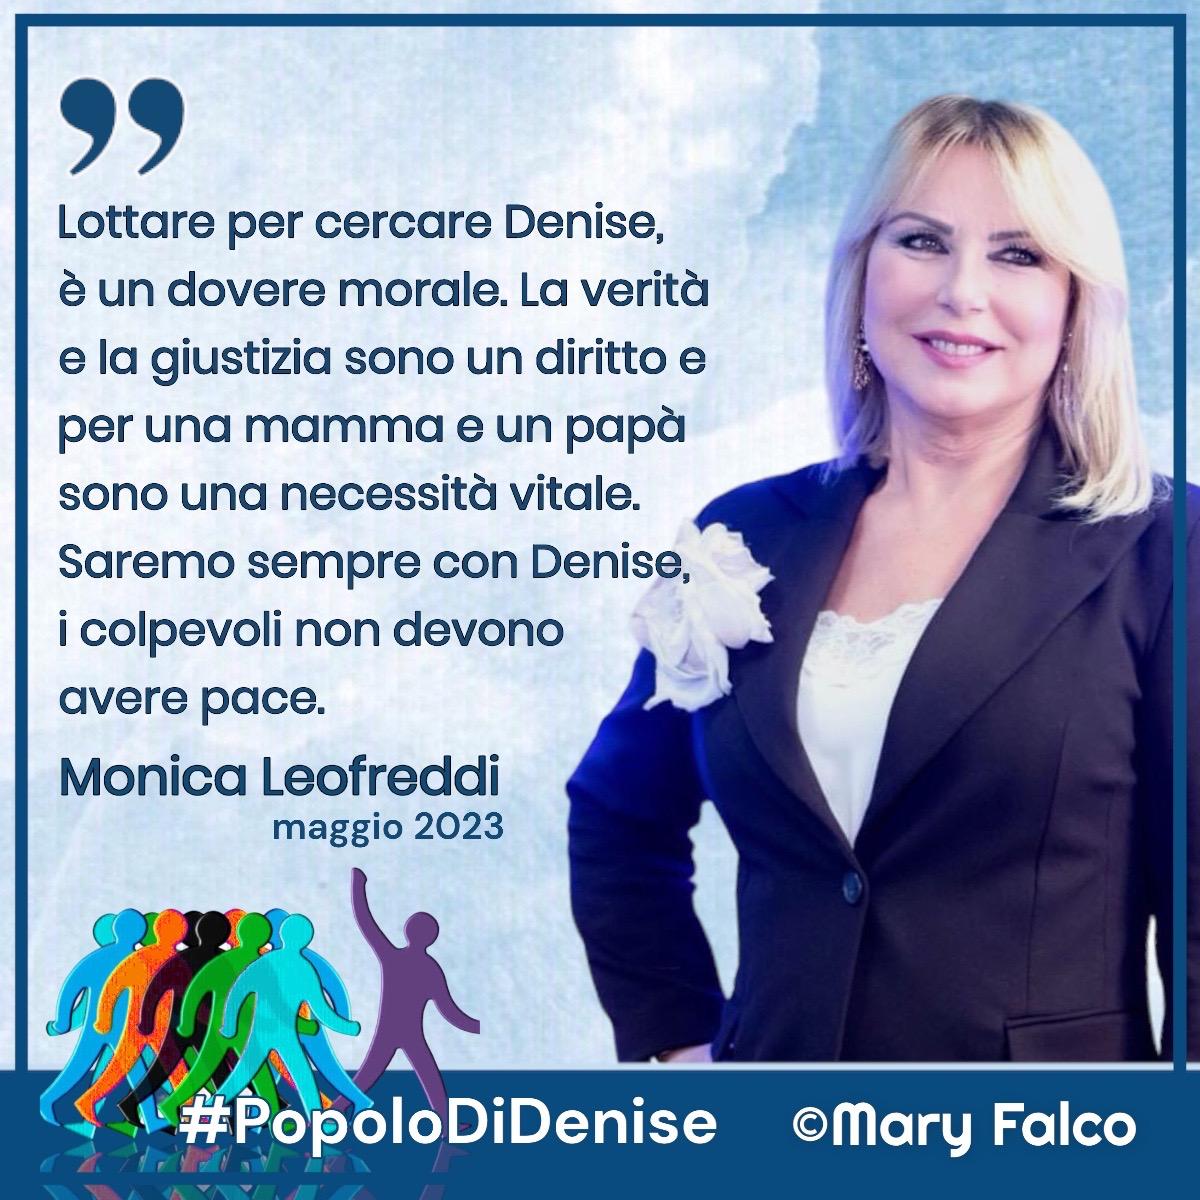 Monica Leofreddi, "Lottare per cercare Denise è un dovere morale"...